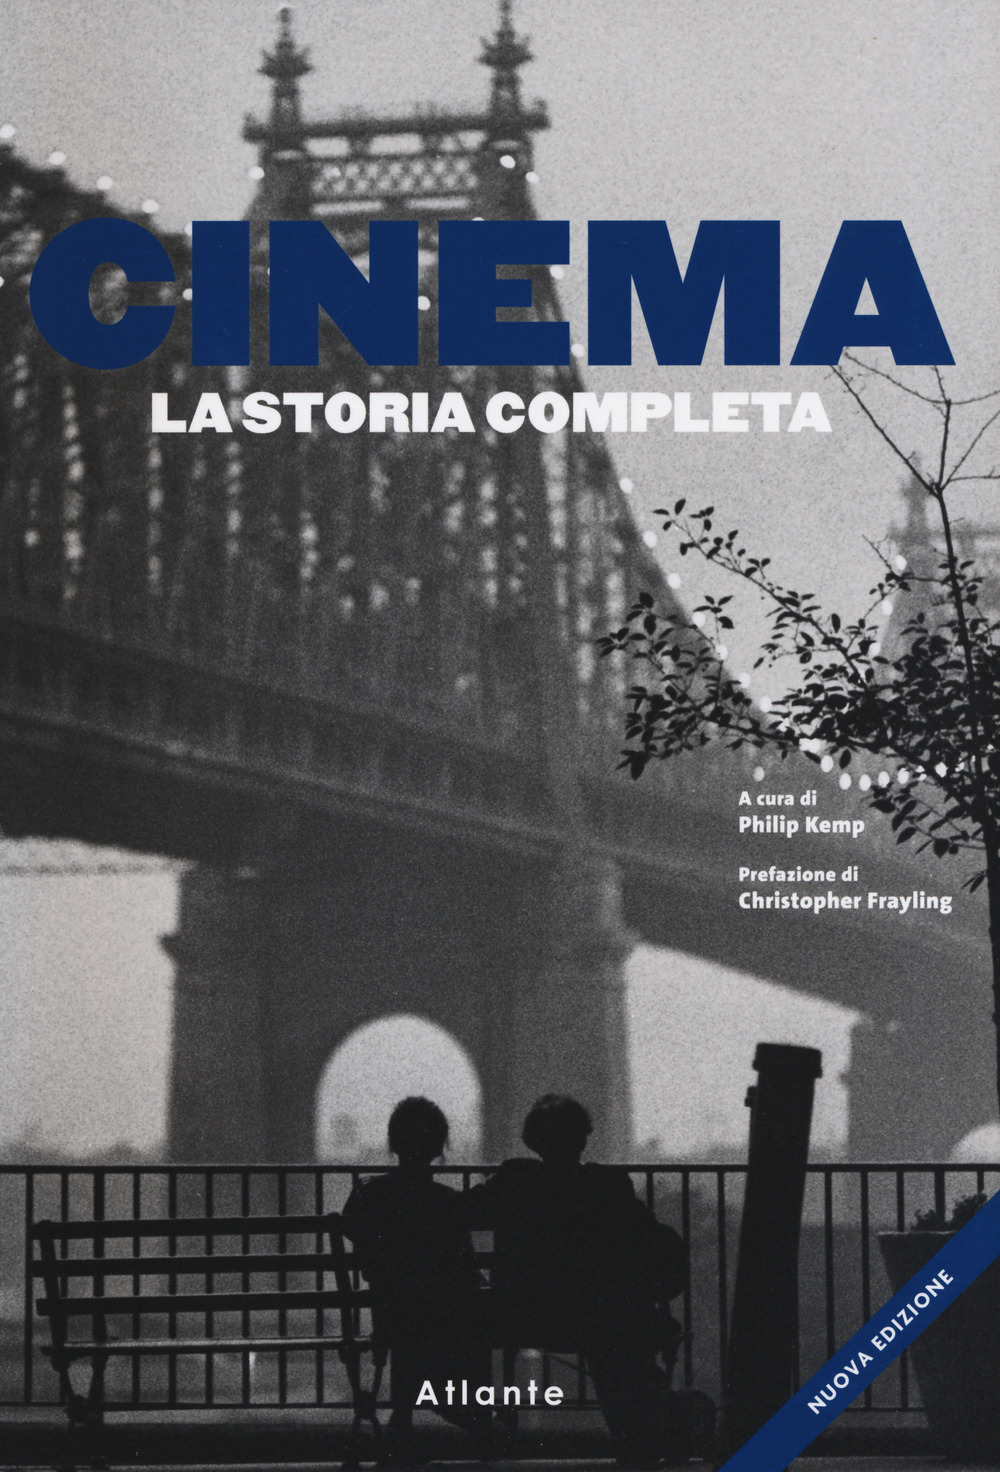 Libri Cinema. La Storia Completa. Nuova Ediz. NUOVO SIGILLATO, EDIZIONE DEL 29/09/2021 SUBITO DISPONIBILE